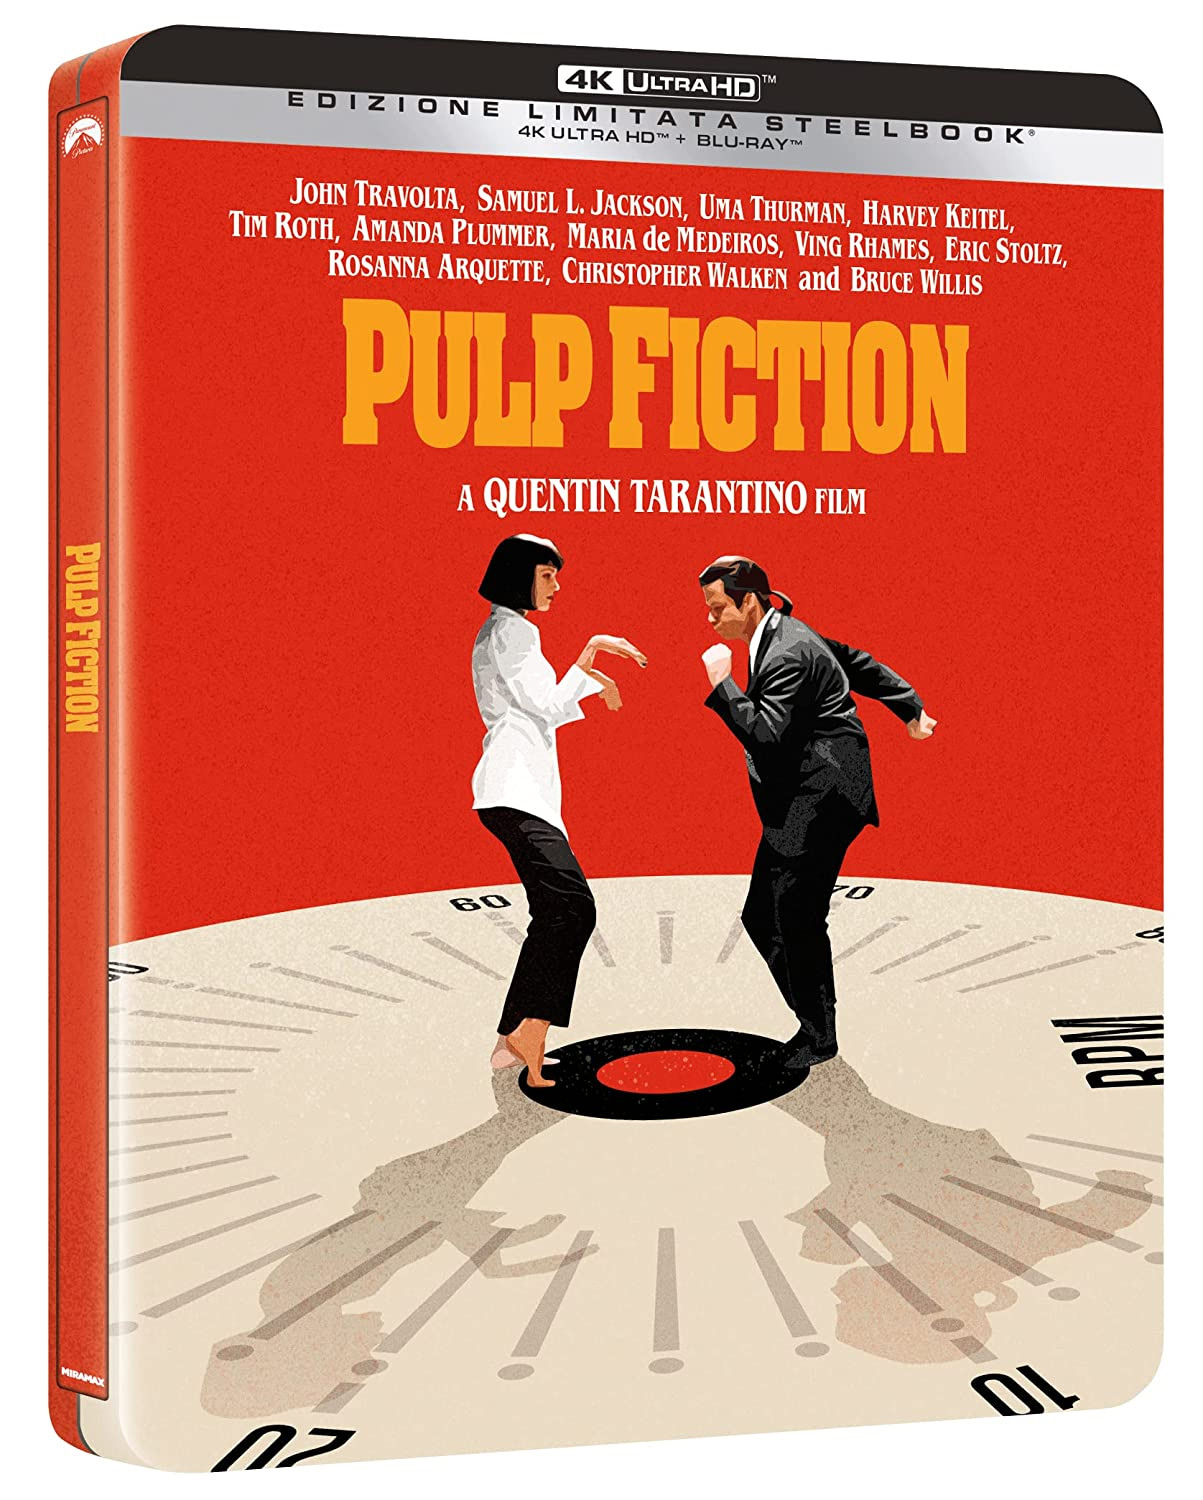 Pulp Fiction in edizione limitata SteelBook in 4K Ultra HD